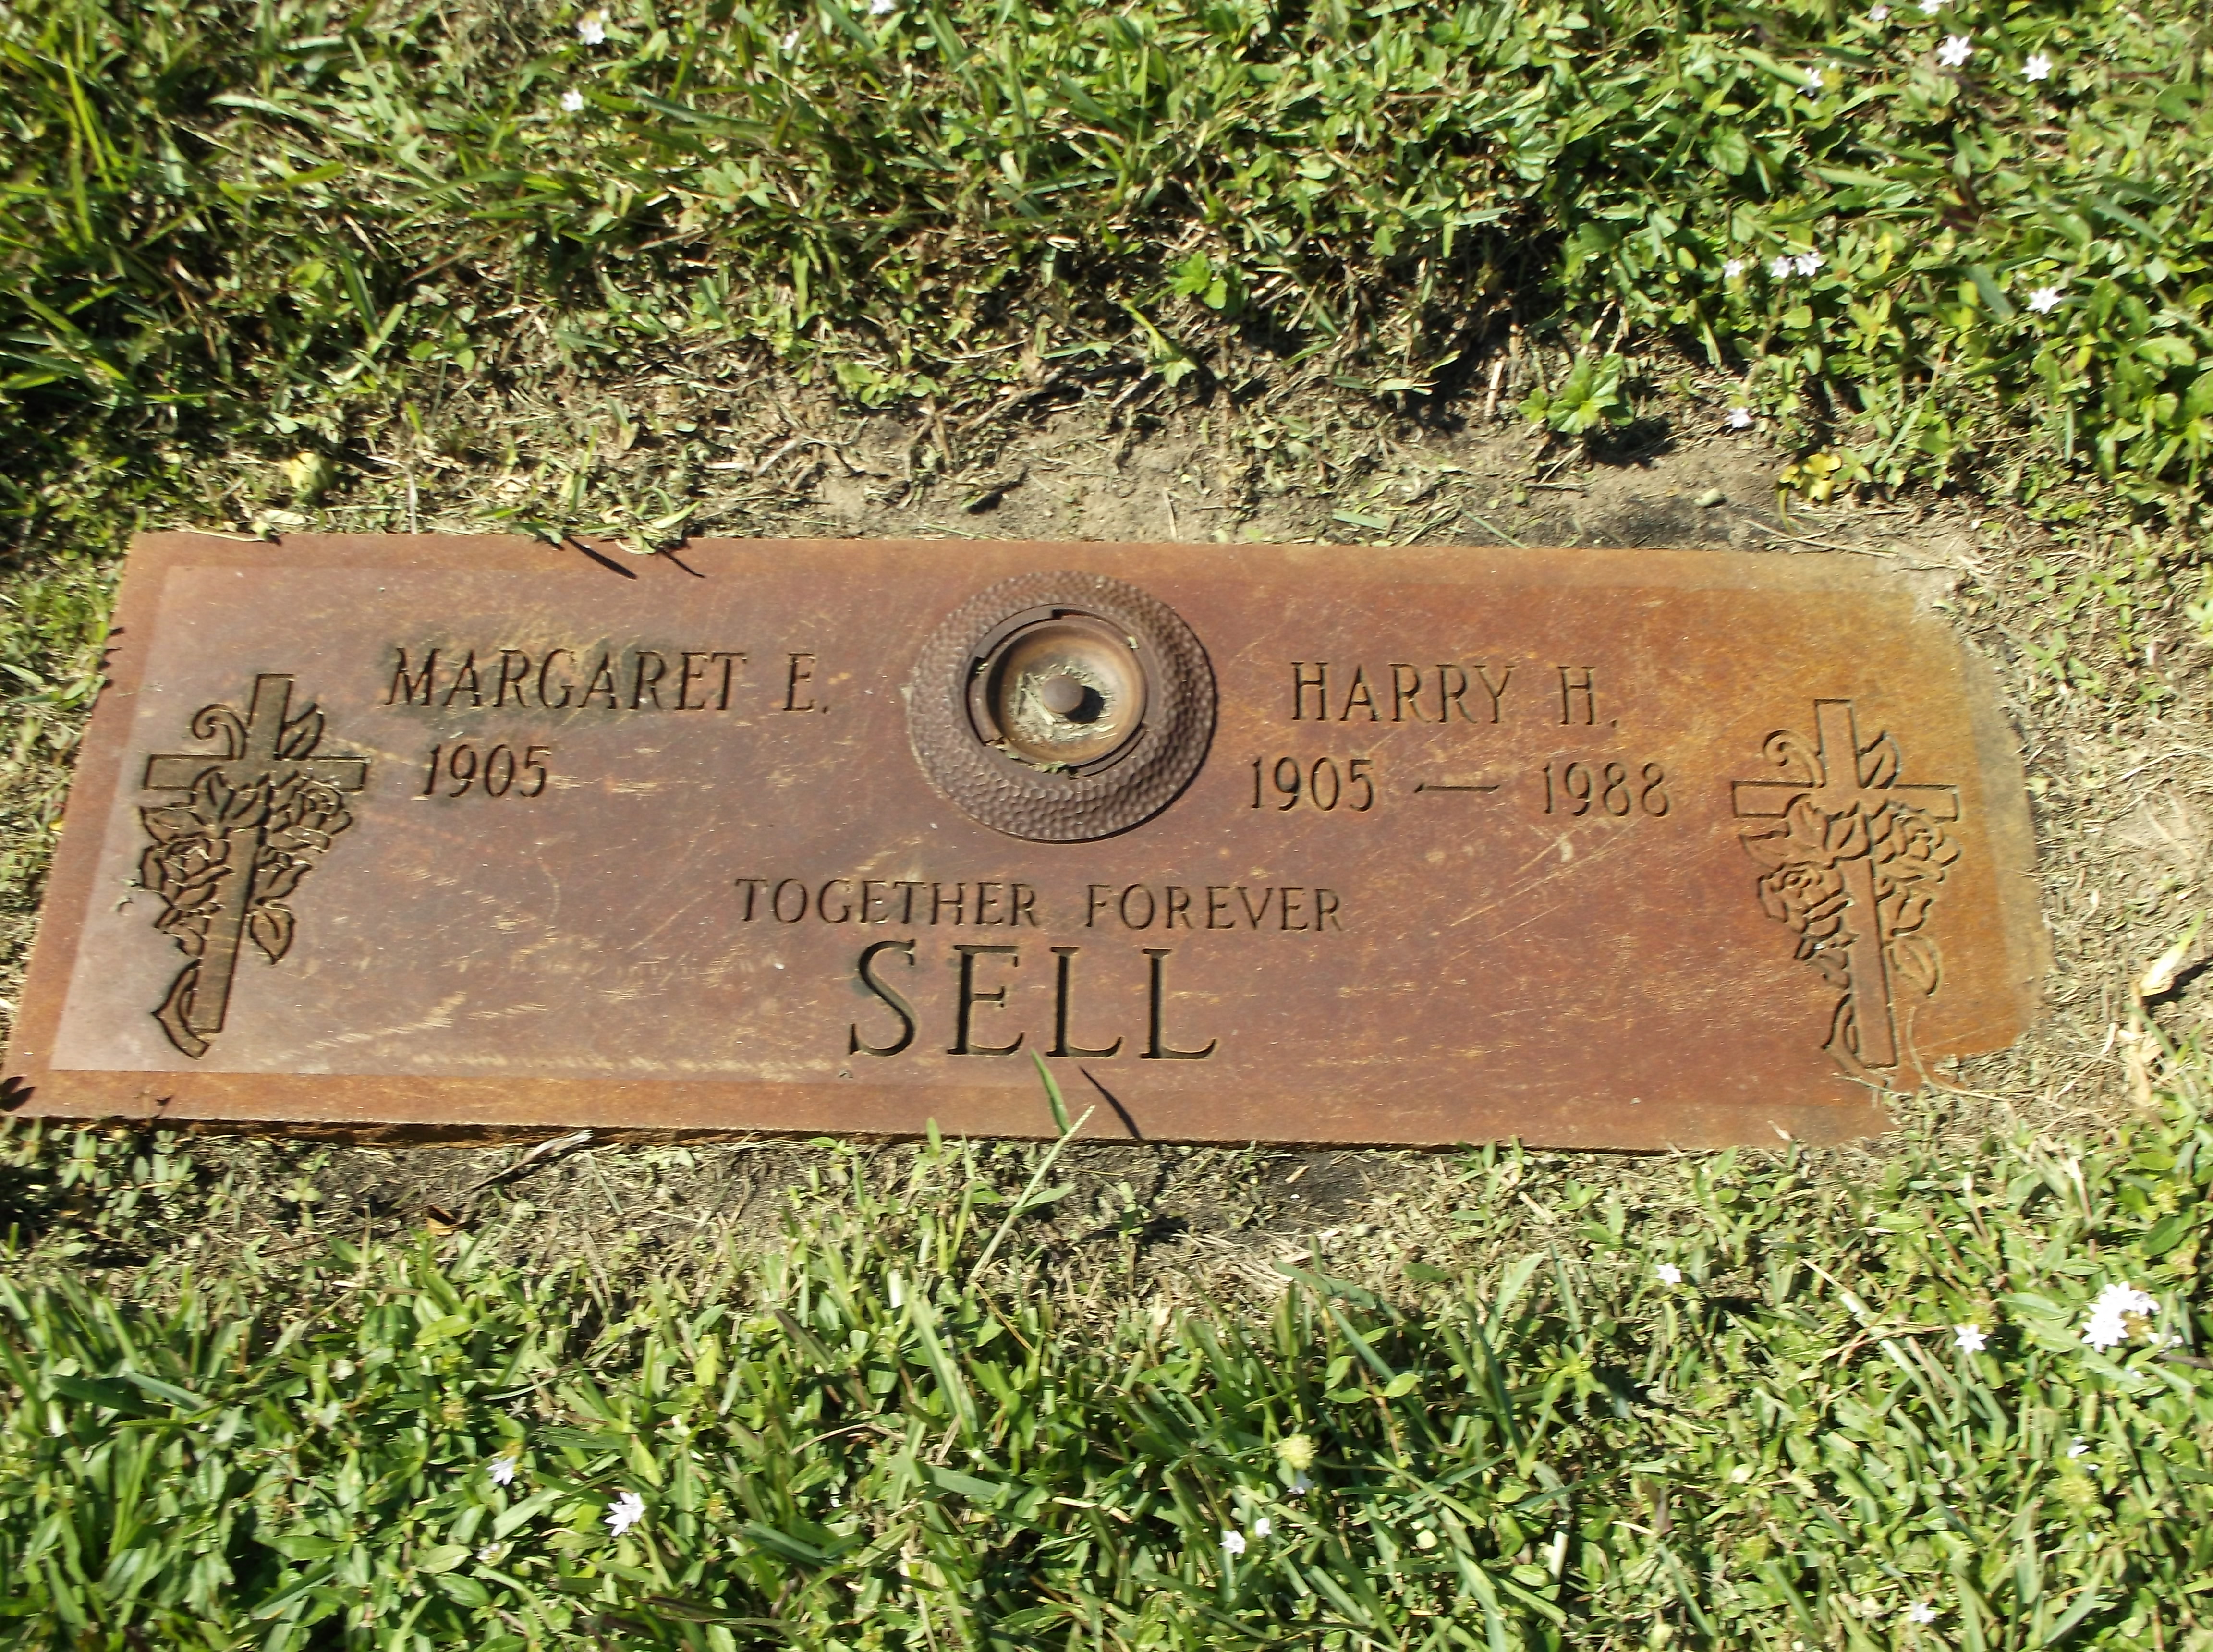 Margaret E Sell